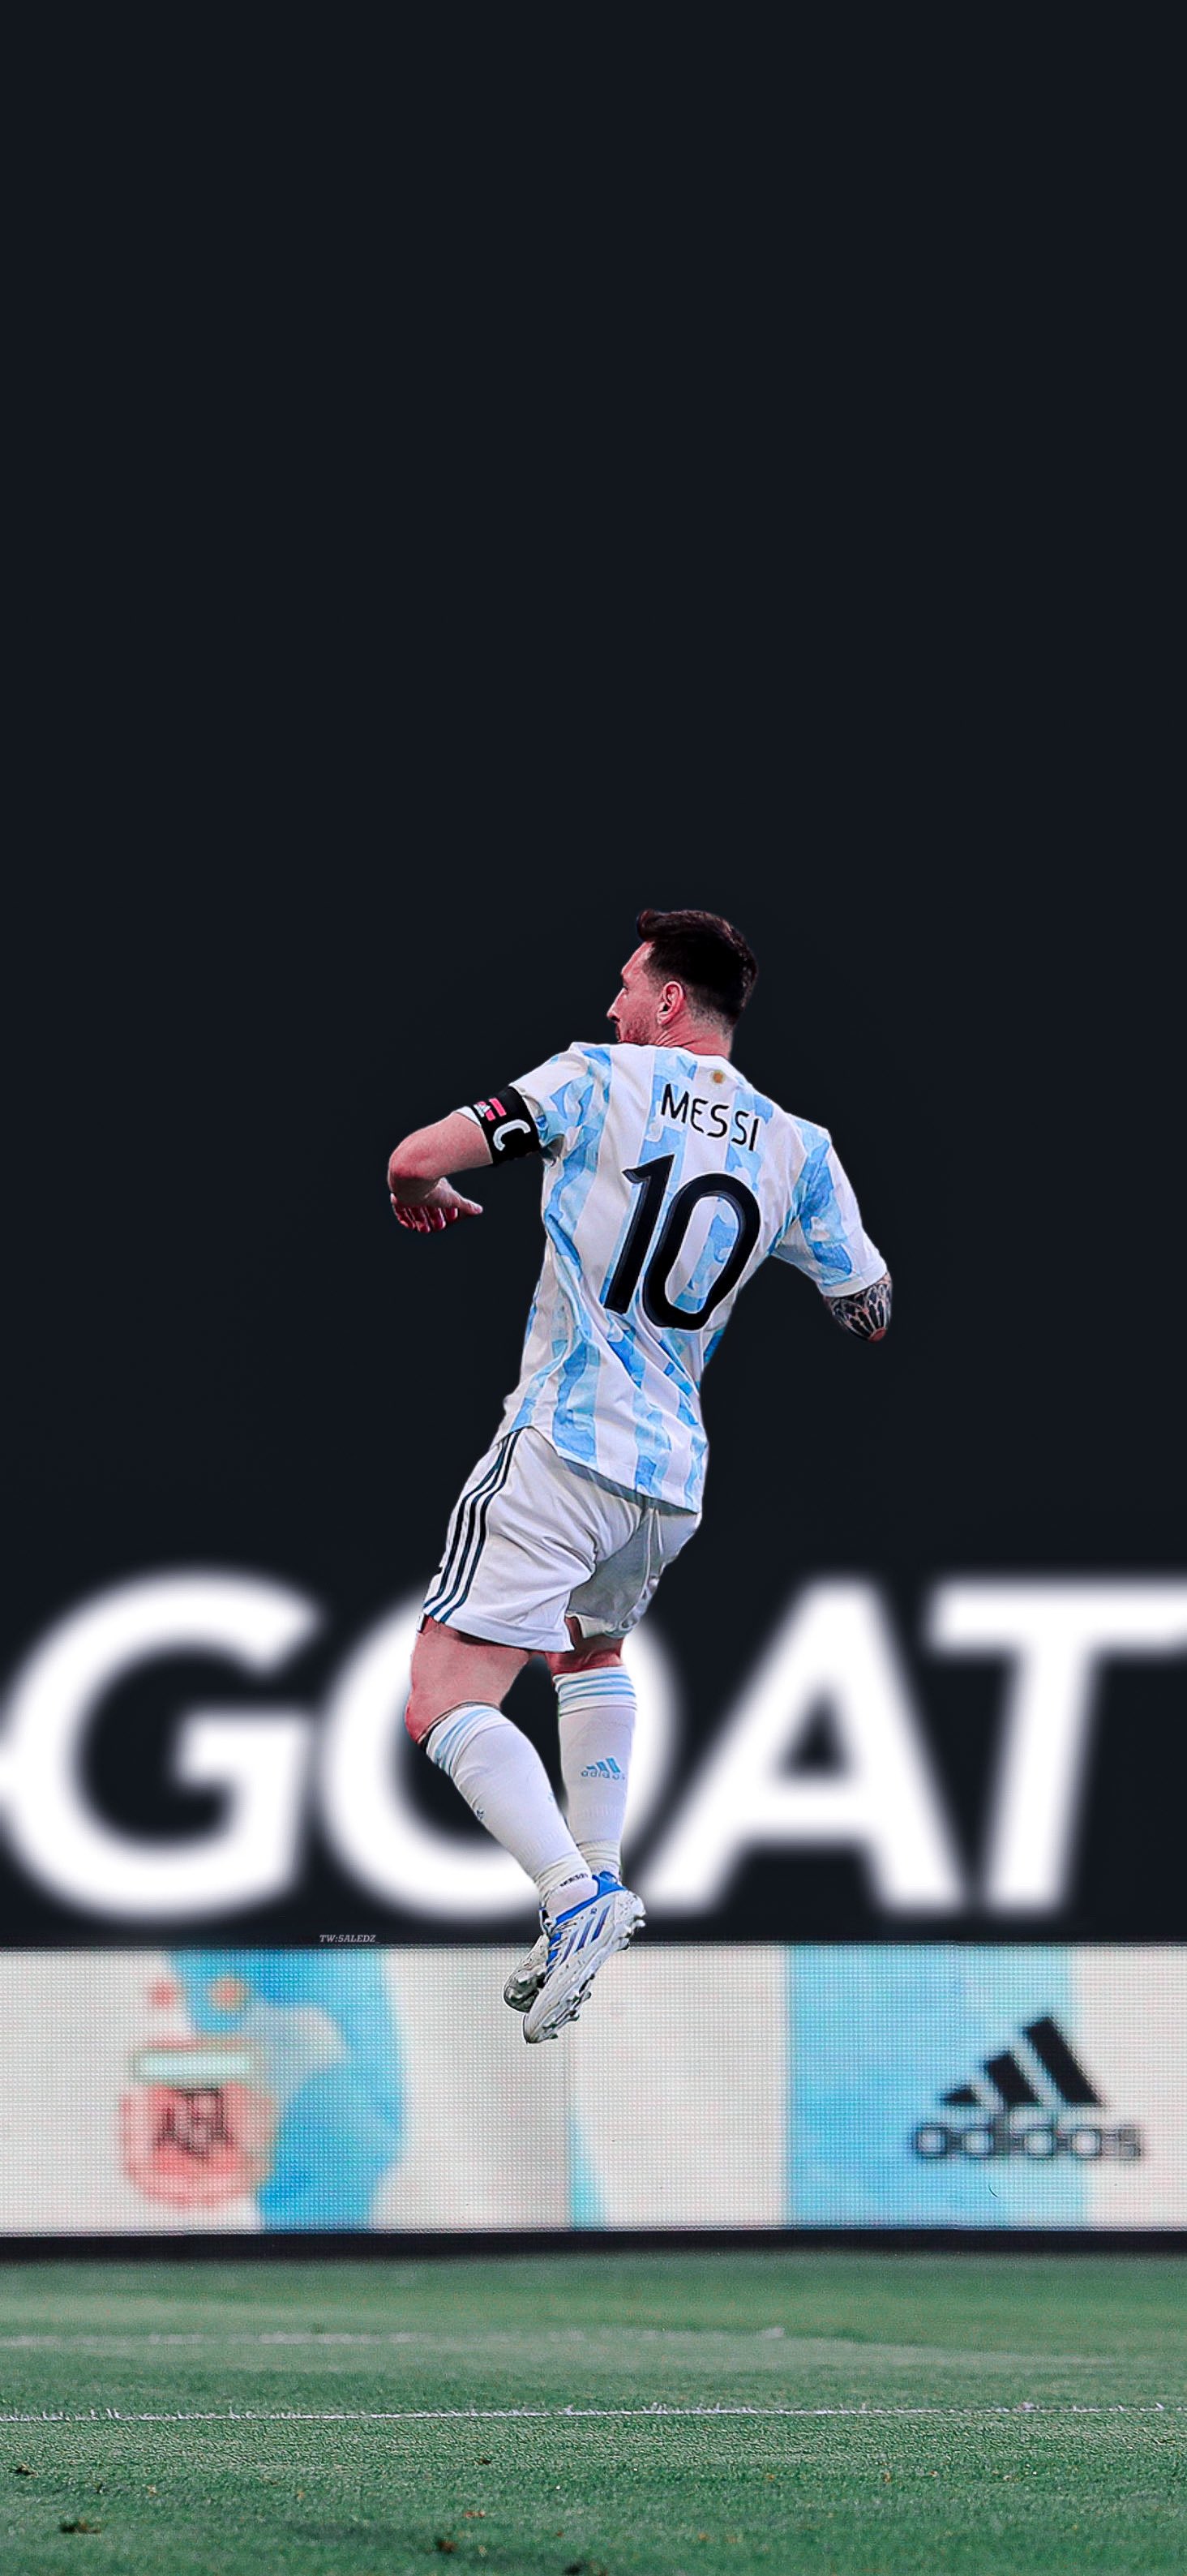 Hãy khám phá bức ảnh Messi 4k wallpaper đẹp nhất với độ phân giải siêu nét, để theo dõi những cú đá phản lưới nhà của các đối thủ trên sân cỏ.